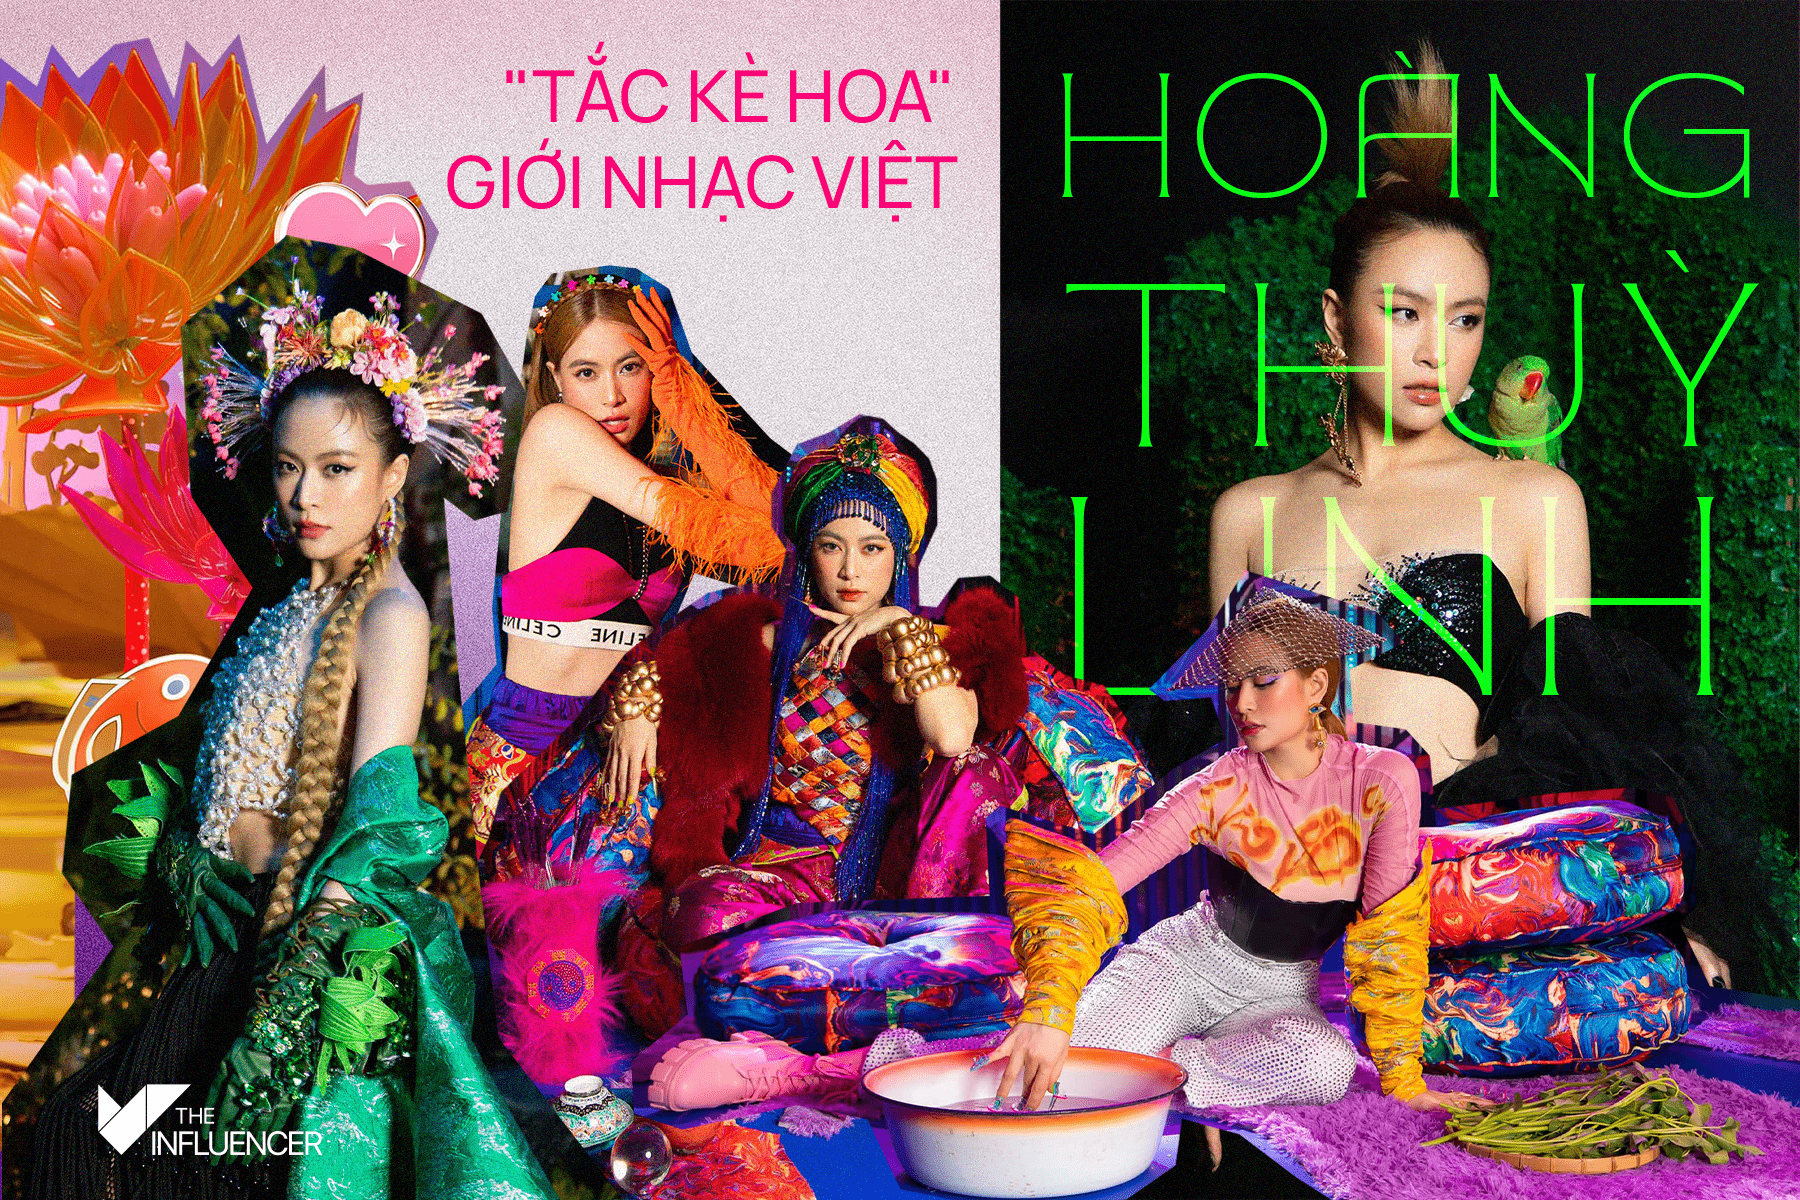 Hoàng Thuỳ Linh - "Tắc kè hoa" giới nhạc Việt